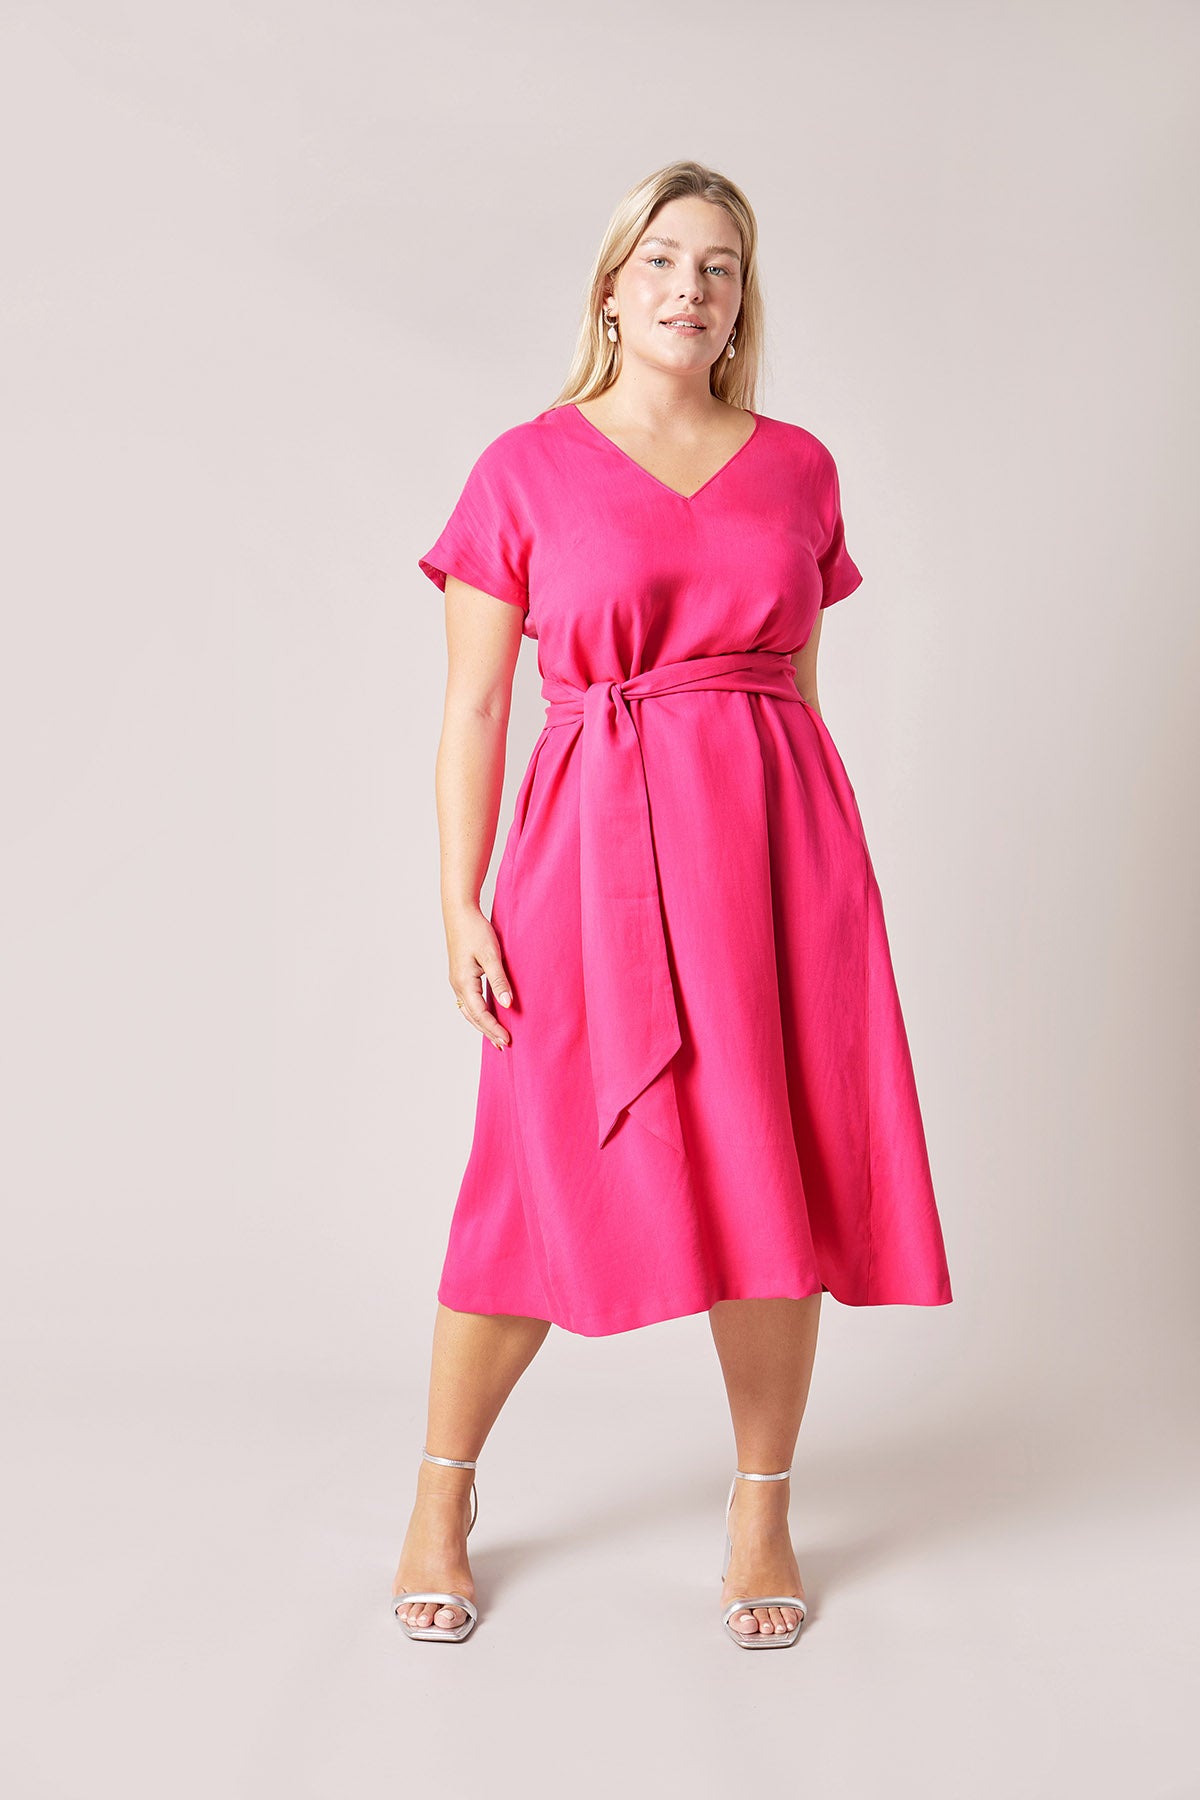 Tencel Fuchsia Pink Dress